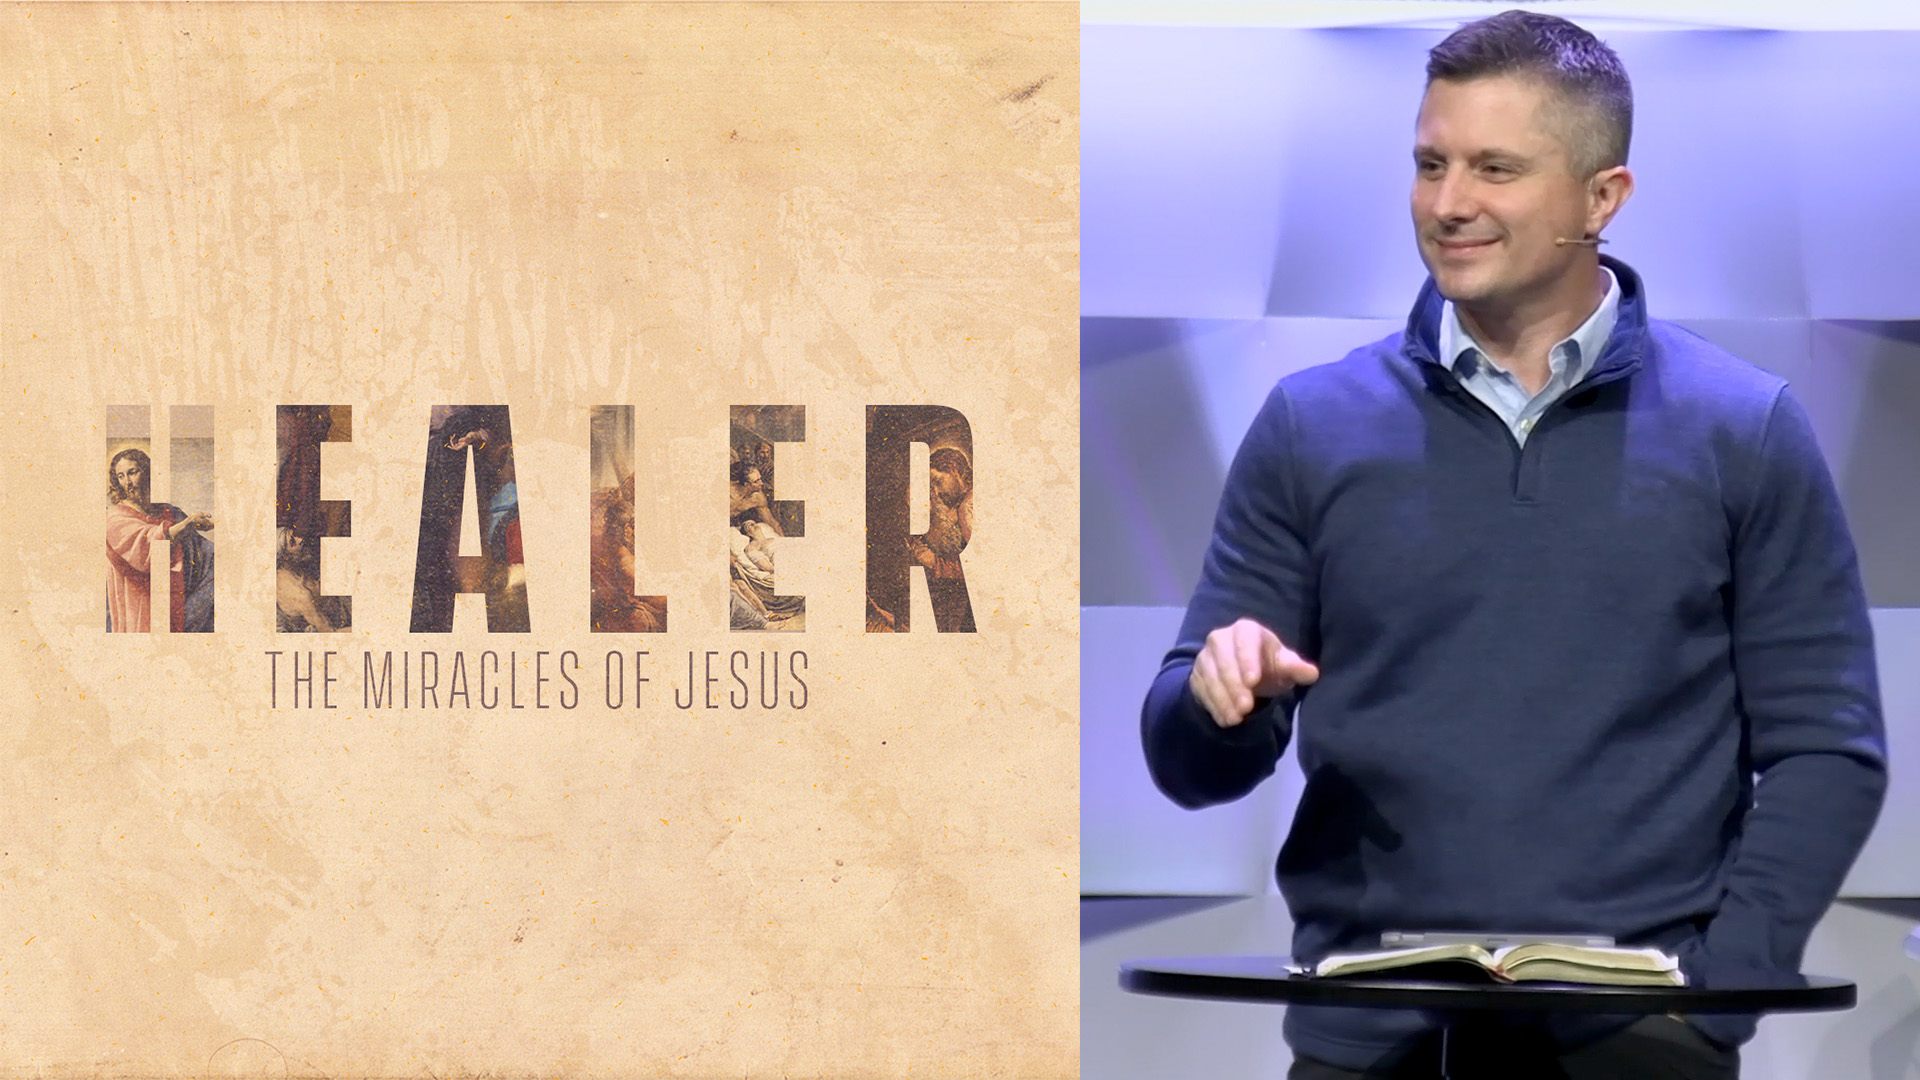 Healer - The Miracles of Jesus - Week Two